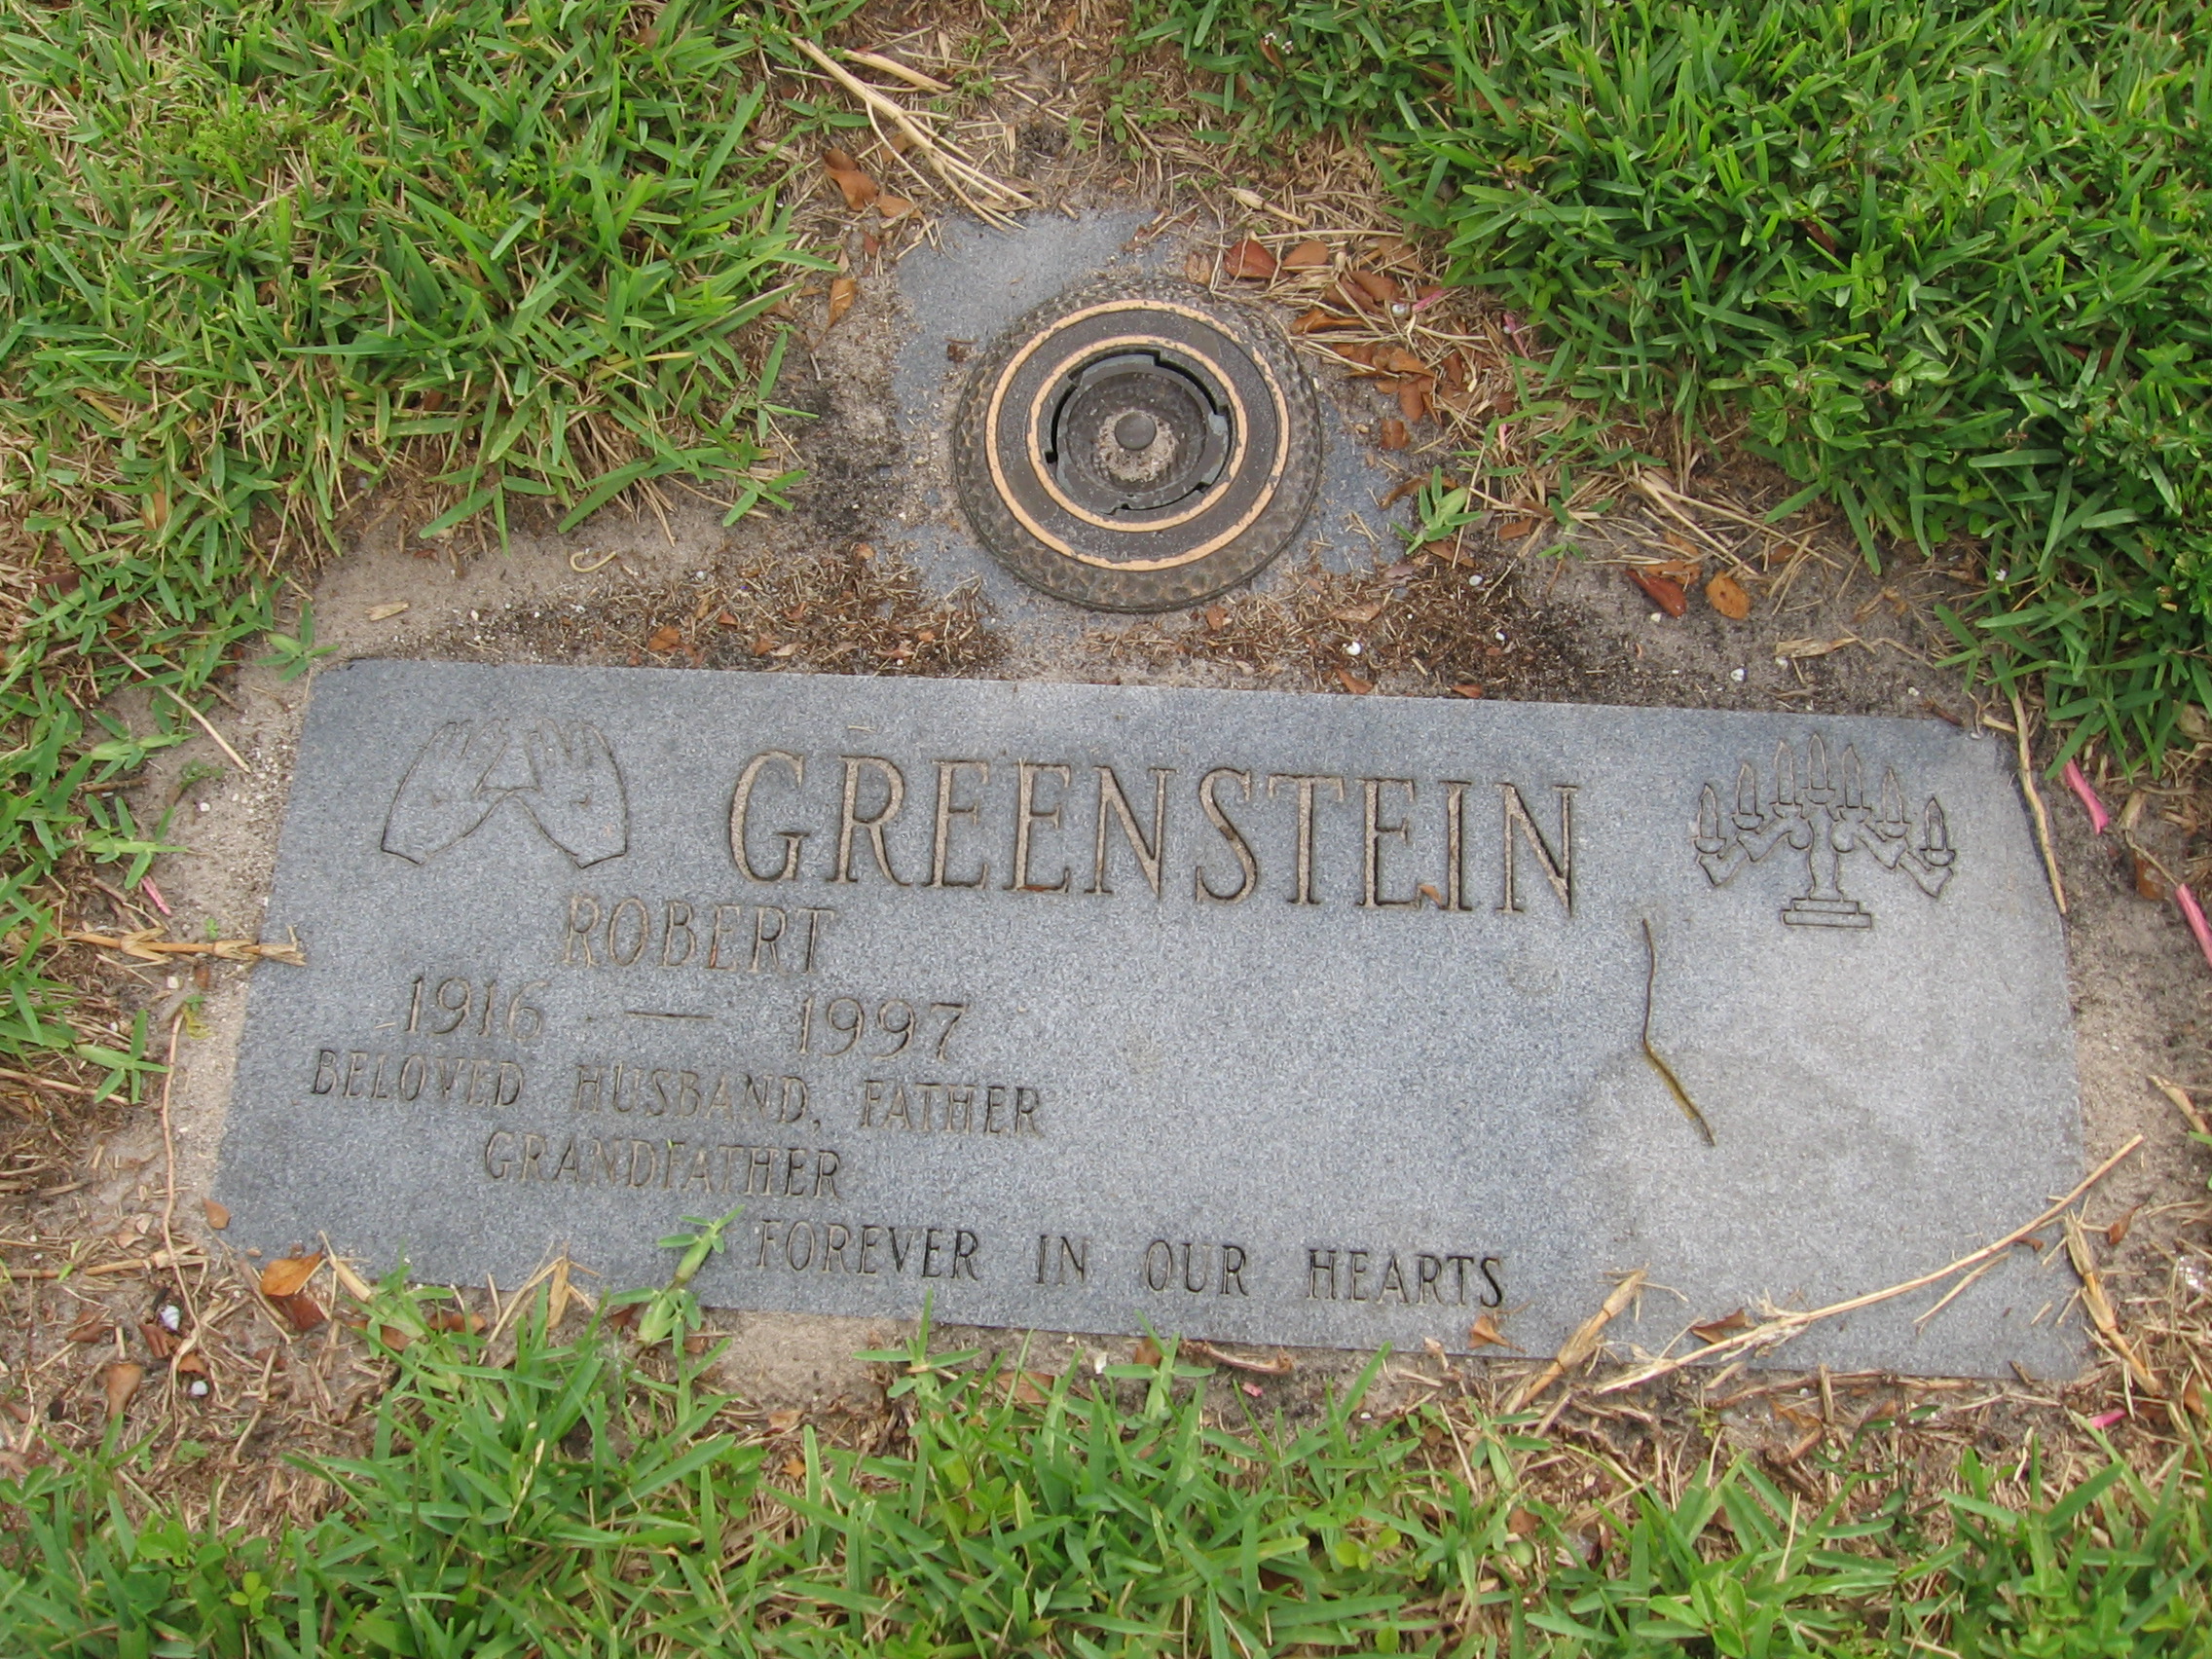 Robert Greenstein